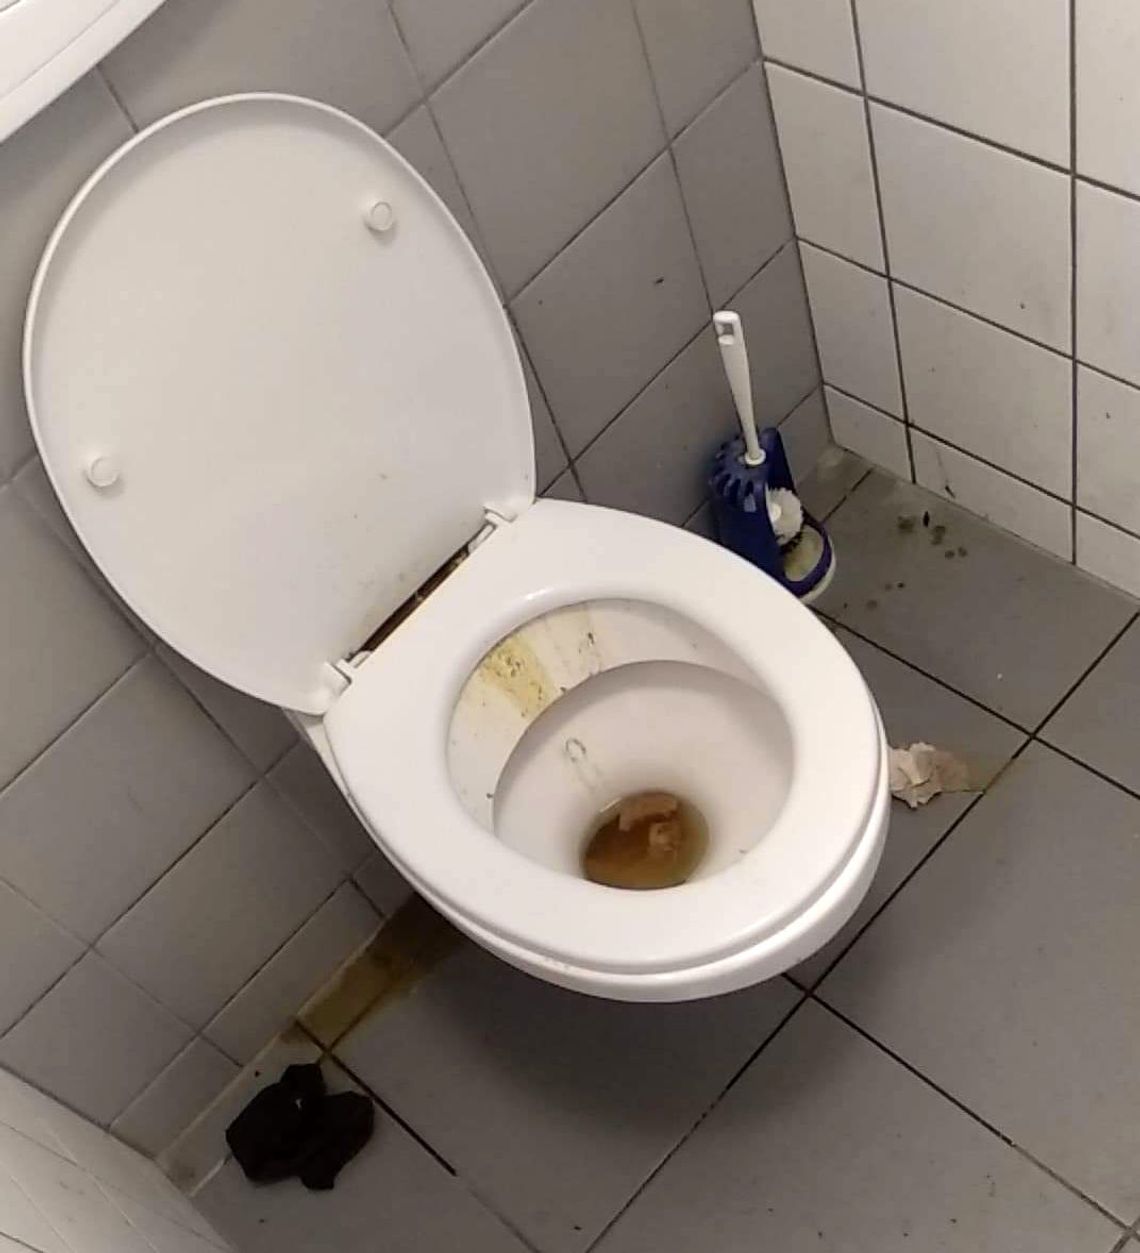 Z takiej toalety lepiej nie korzystać! - ostrzega czytelniczka